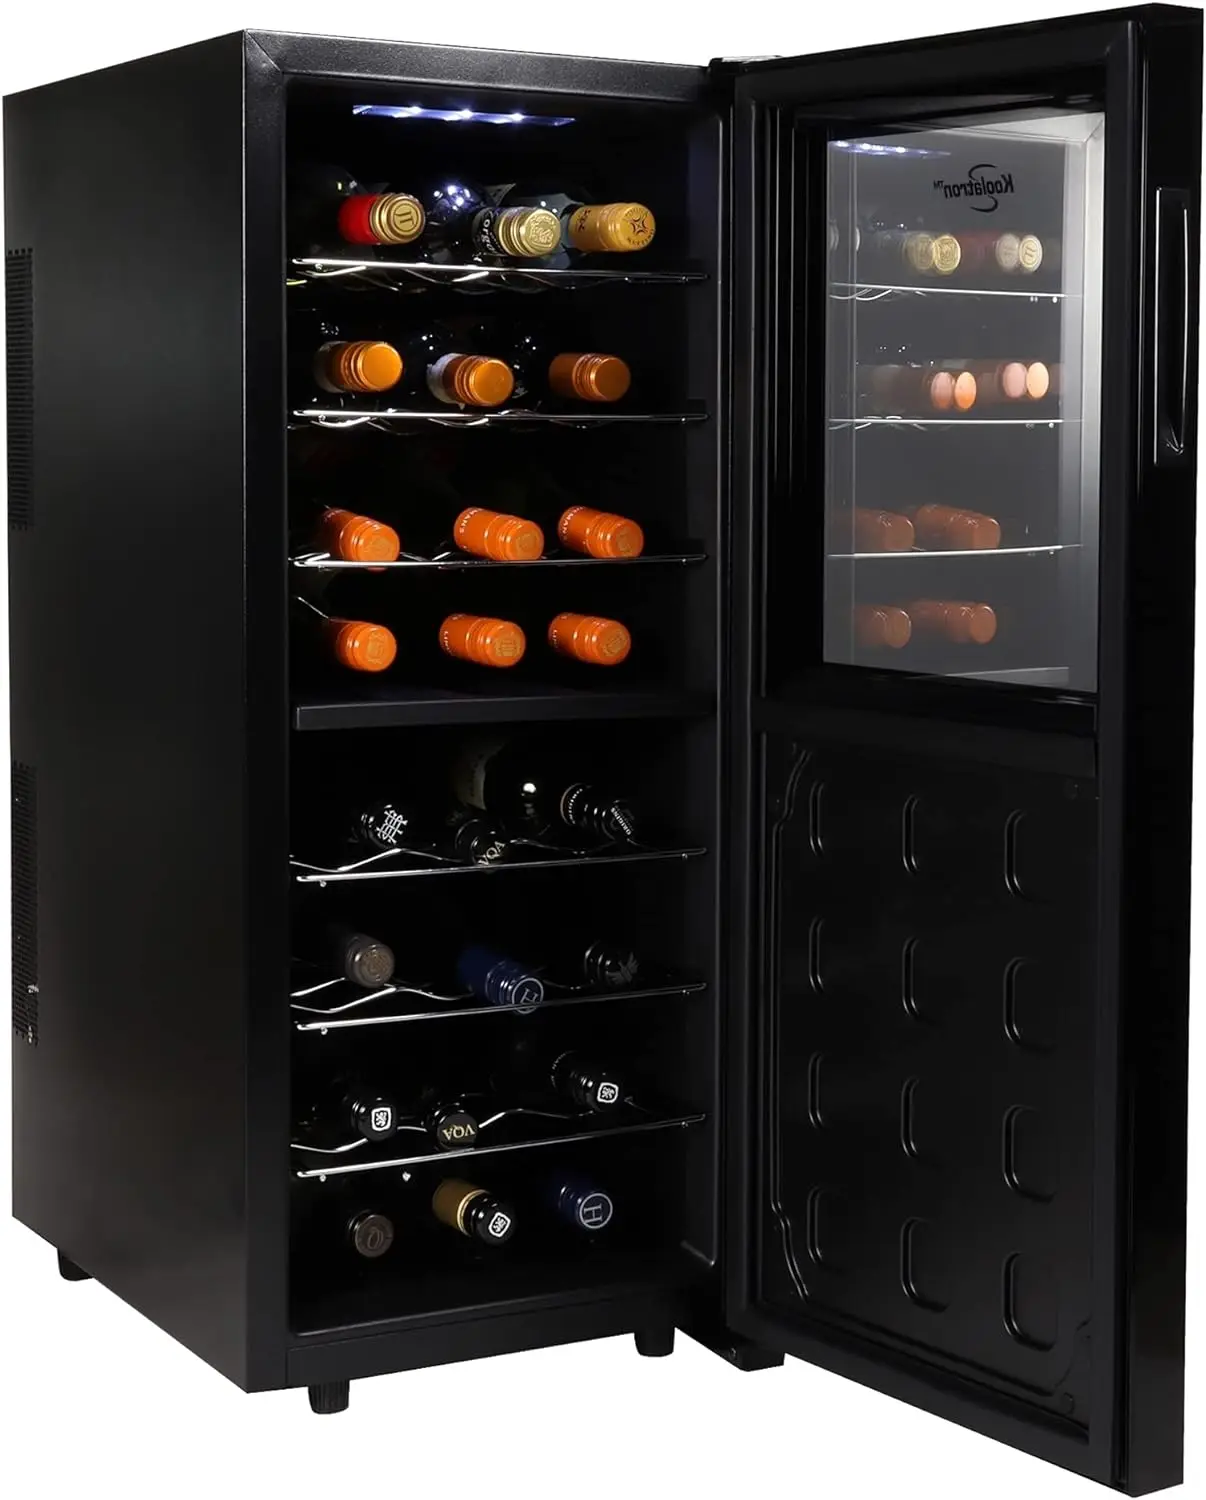 

Двухместный винный охладитель для бутылок, черный термоэлектрический винный холодильник, 2,4 куб. Футов (68 л), отдельно стоящий винный погреб, красный, белый, Sparklin